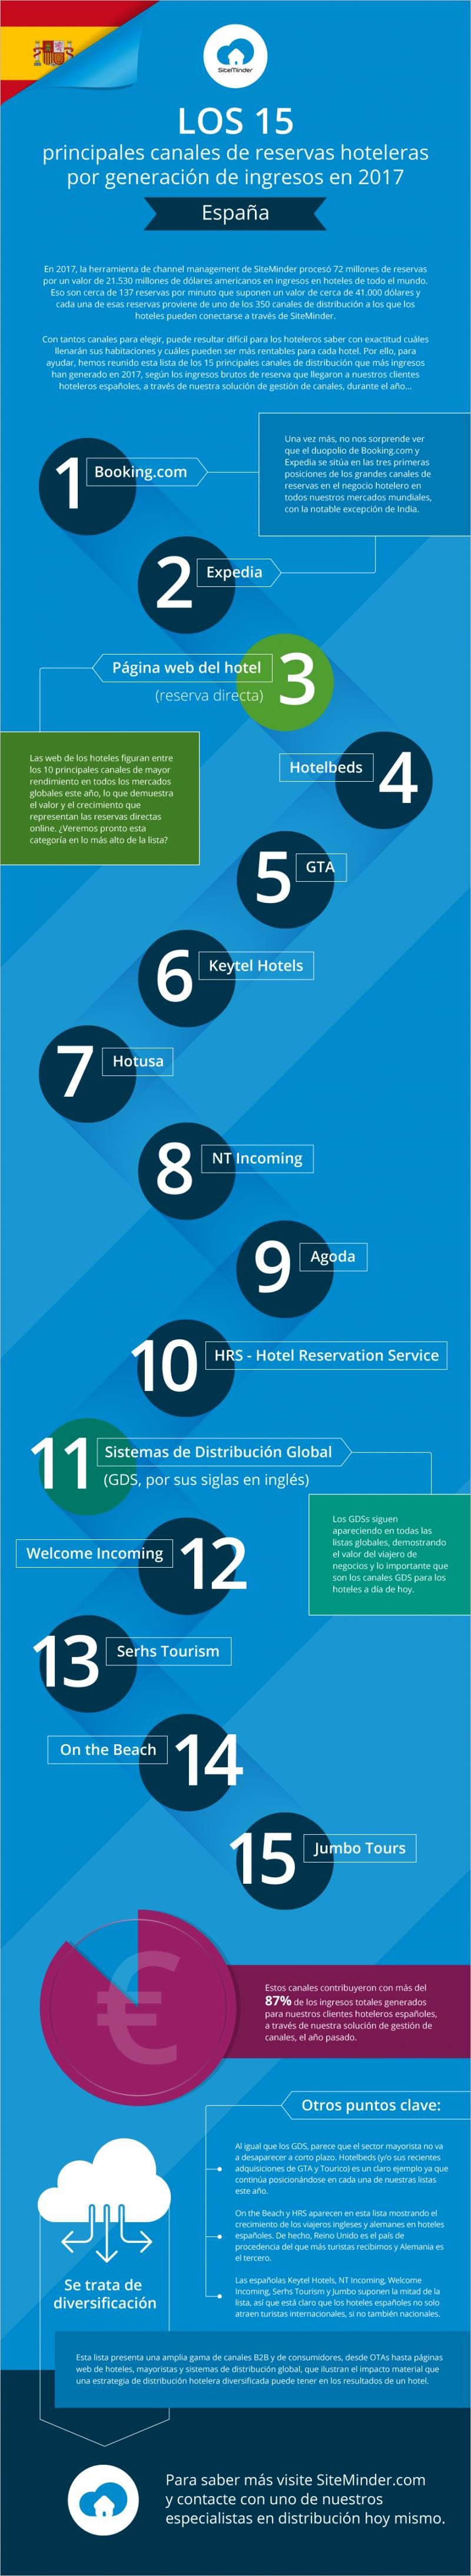 Infografía de SiteMinder que refleja los 15 principales canales de reserva para los hoteles en España.